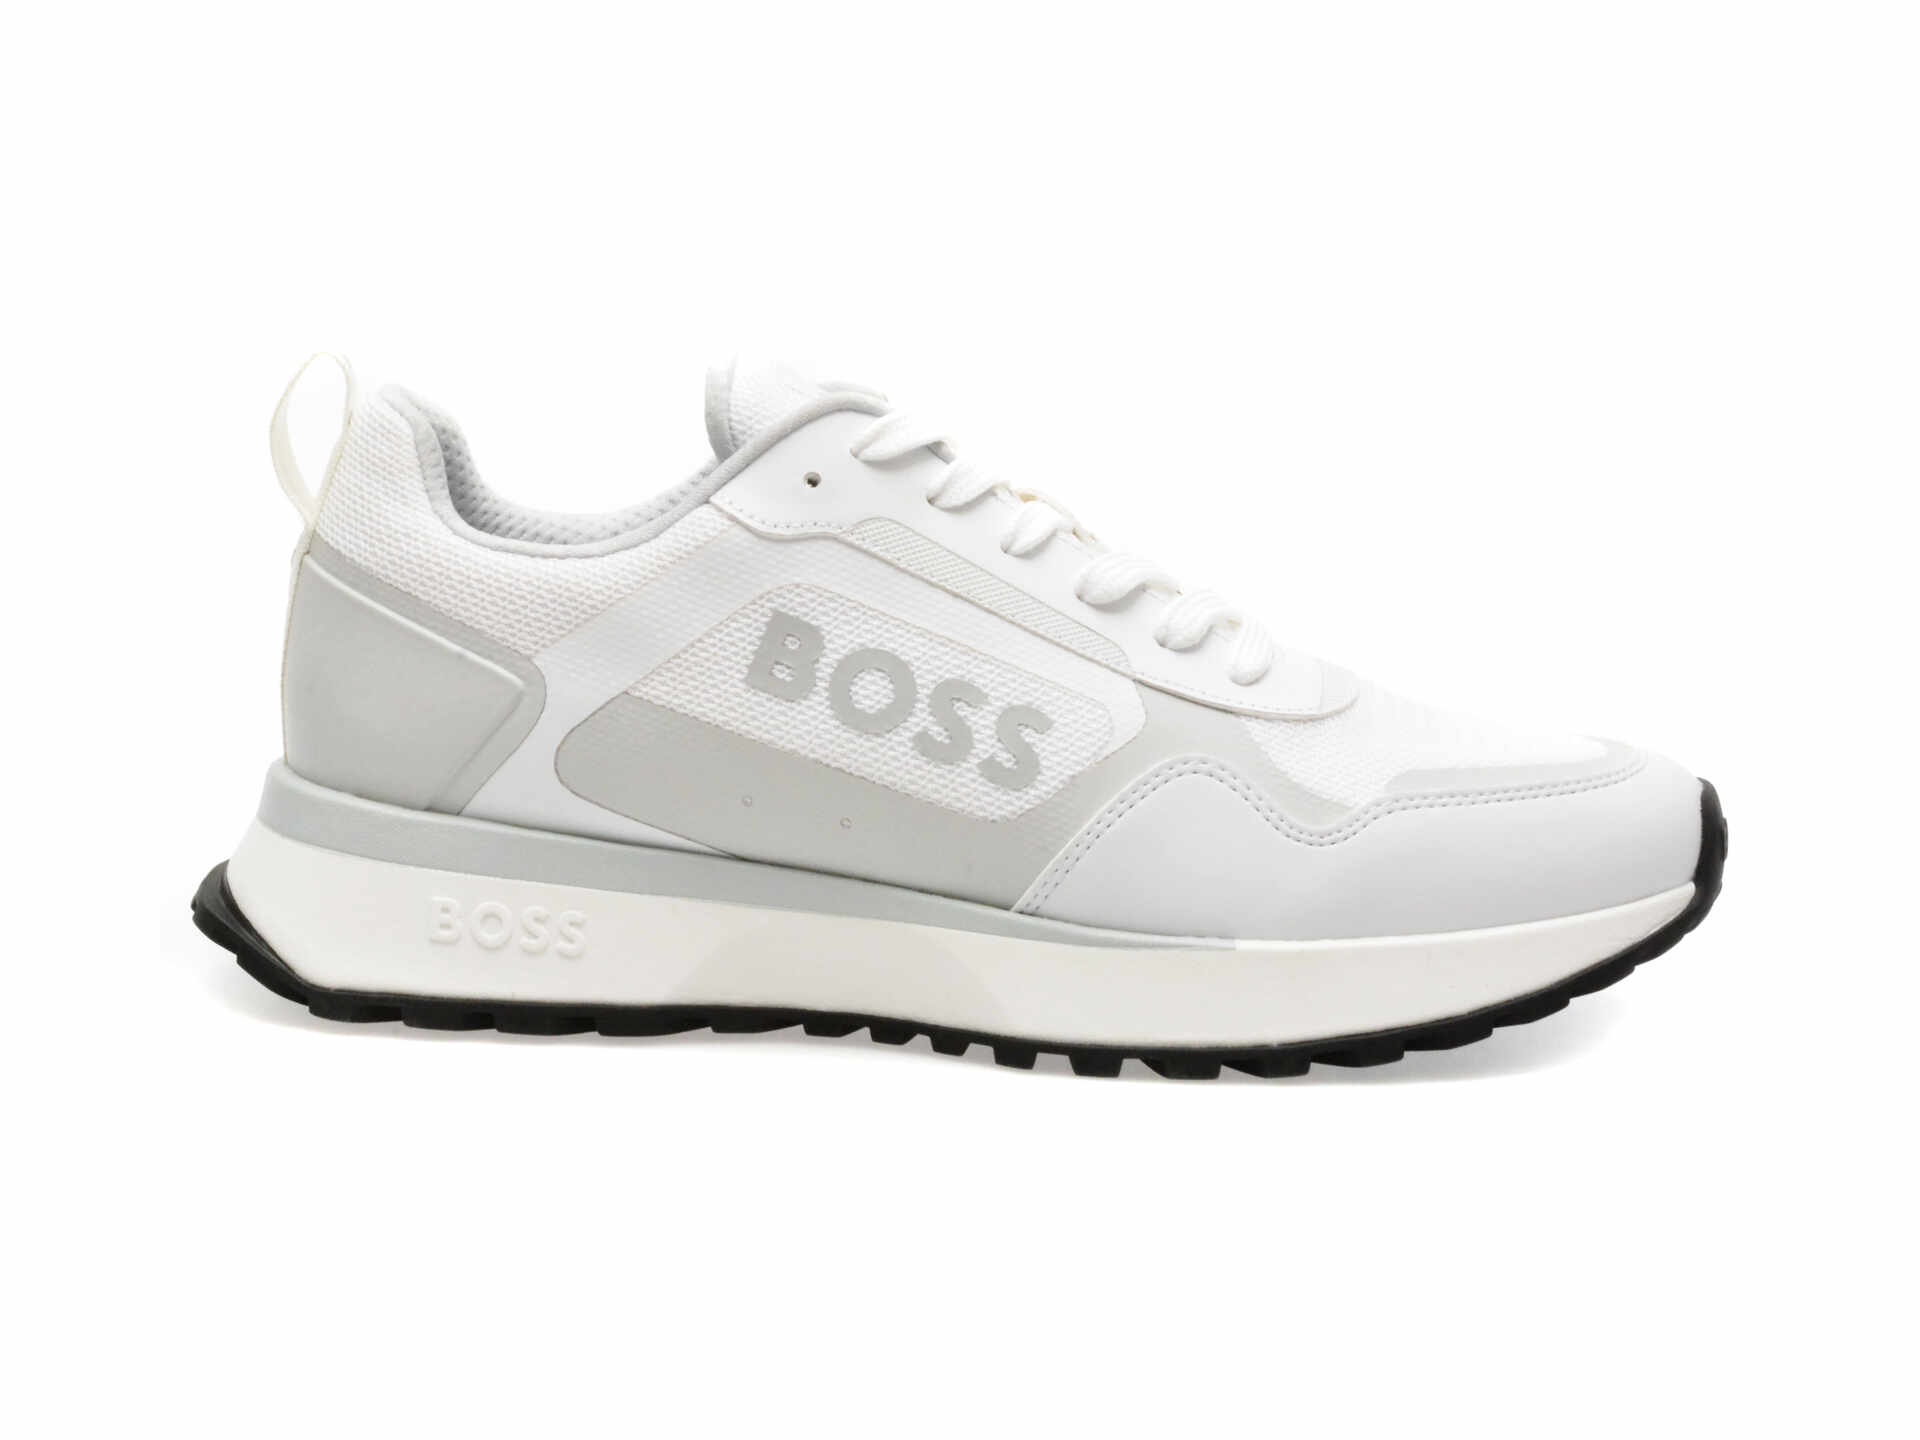 Pantofi sport BOSS albi, 7300, din piele ecologica